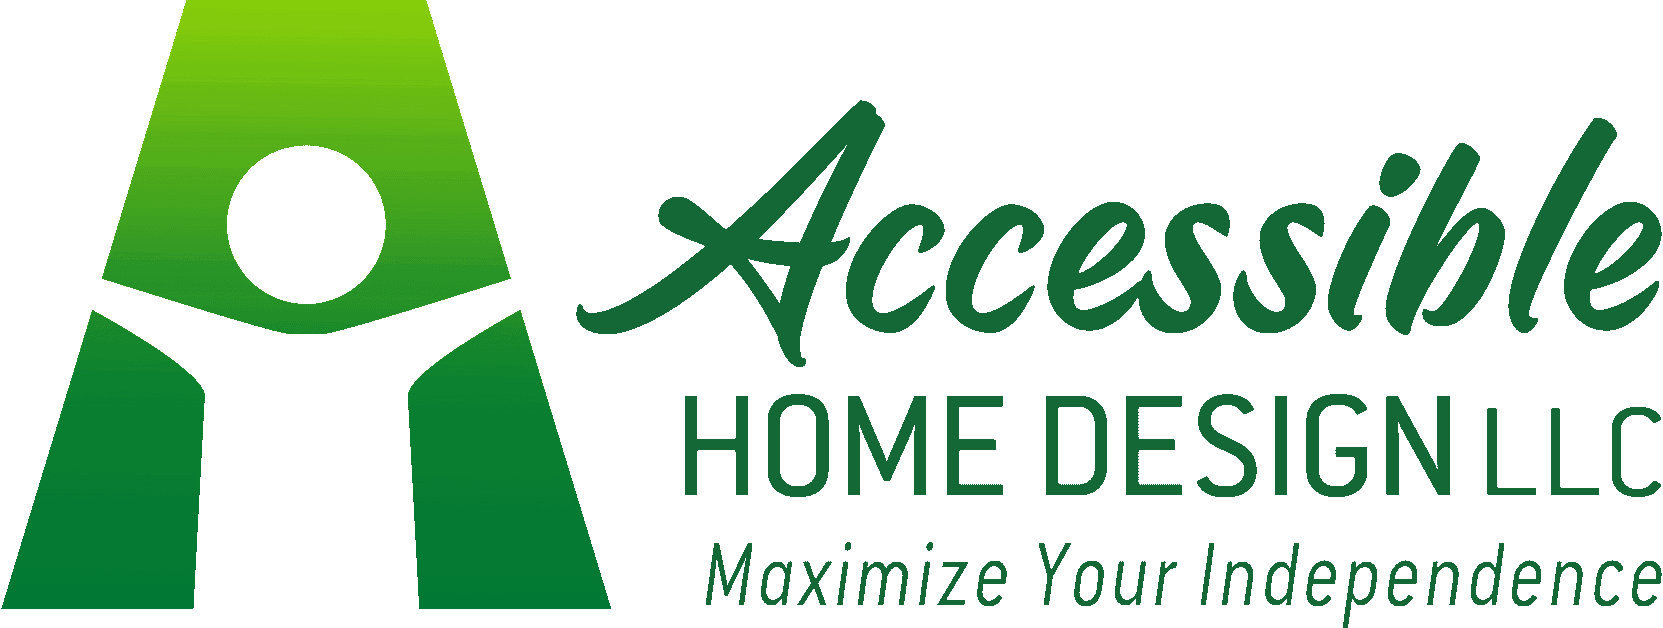 Accessible Home Design Logo